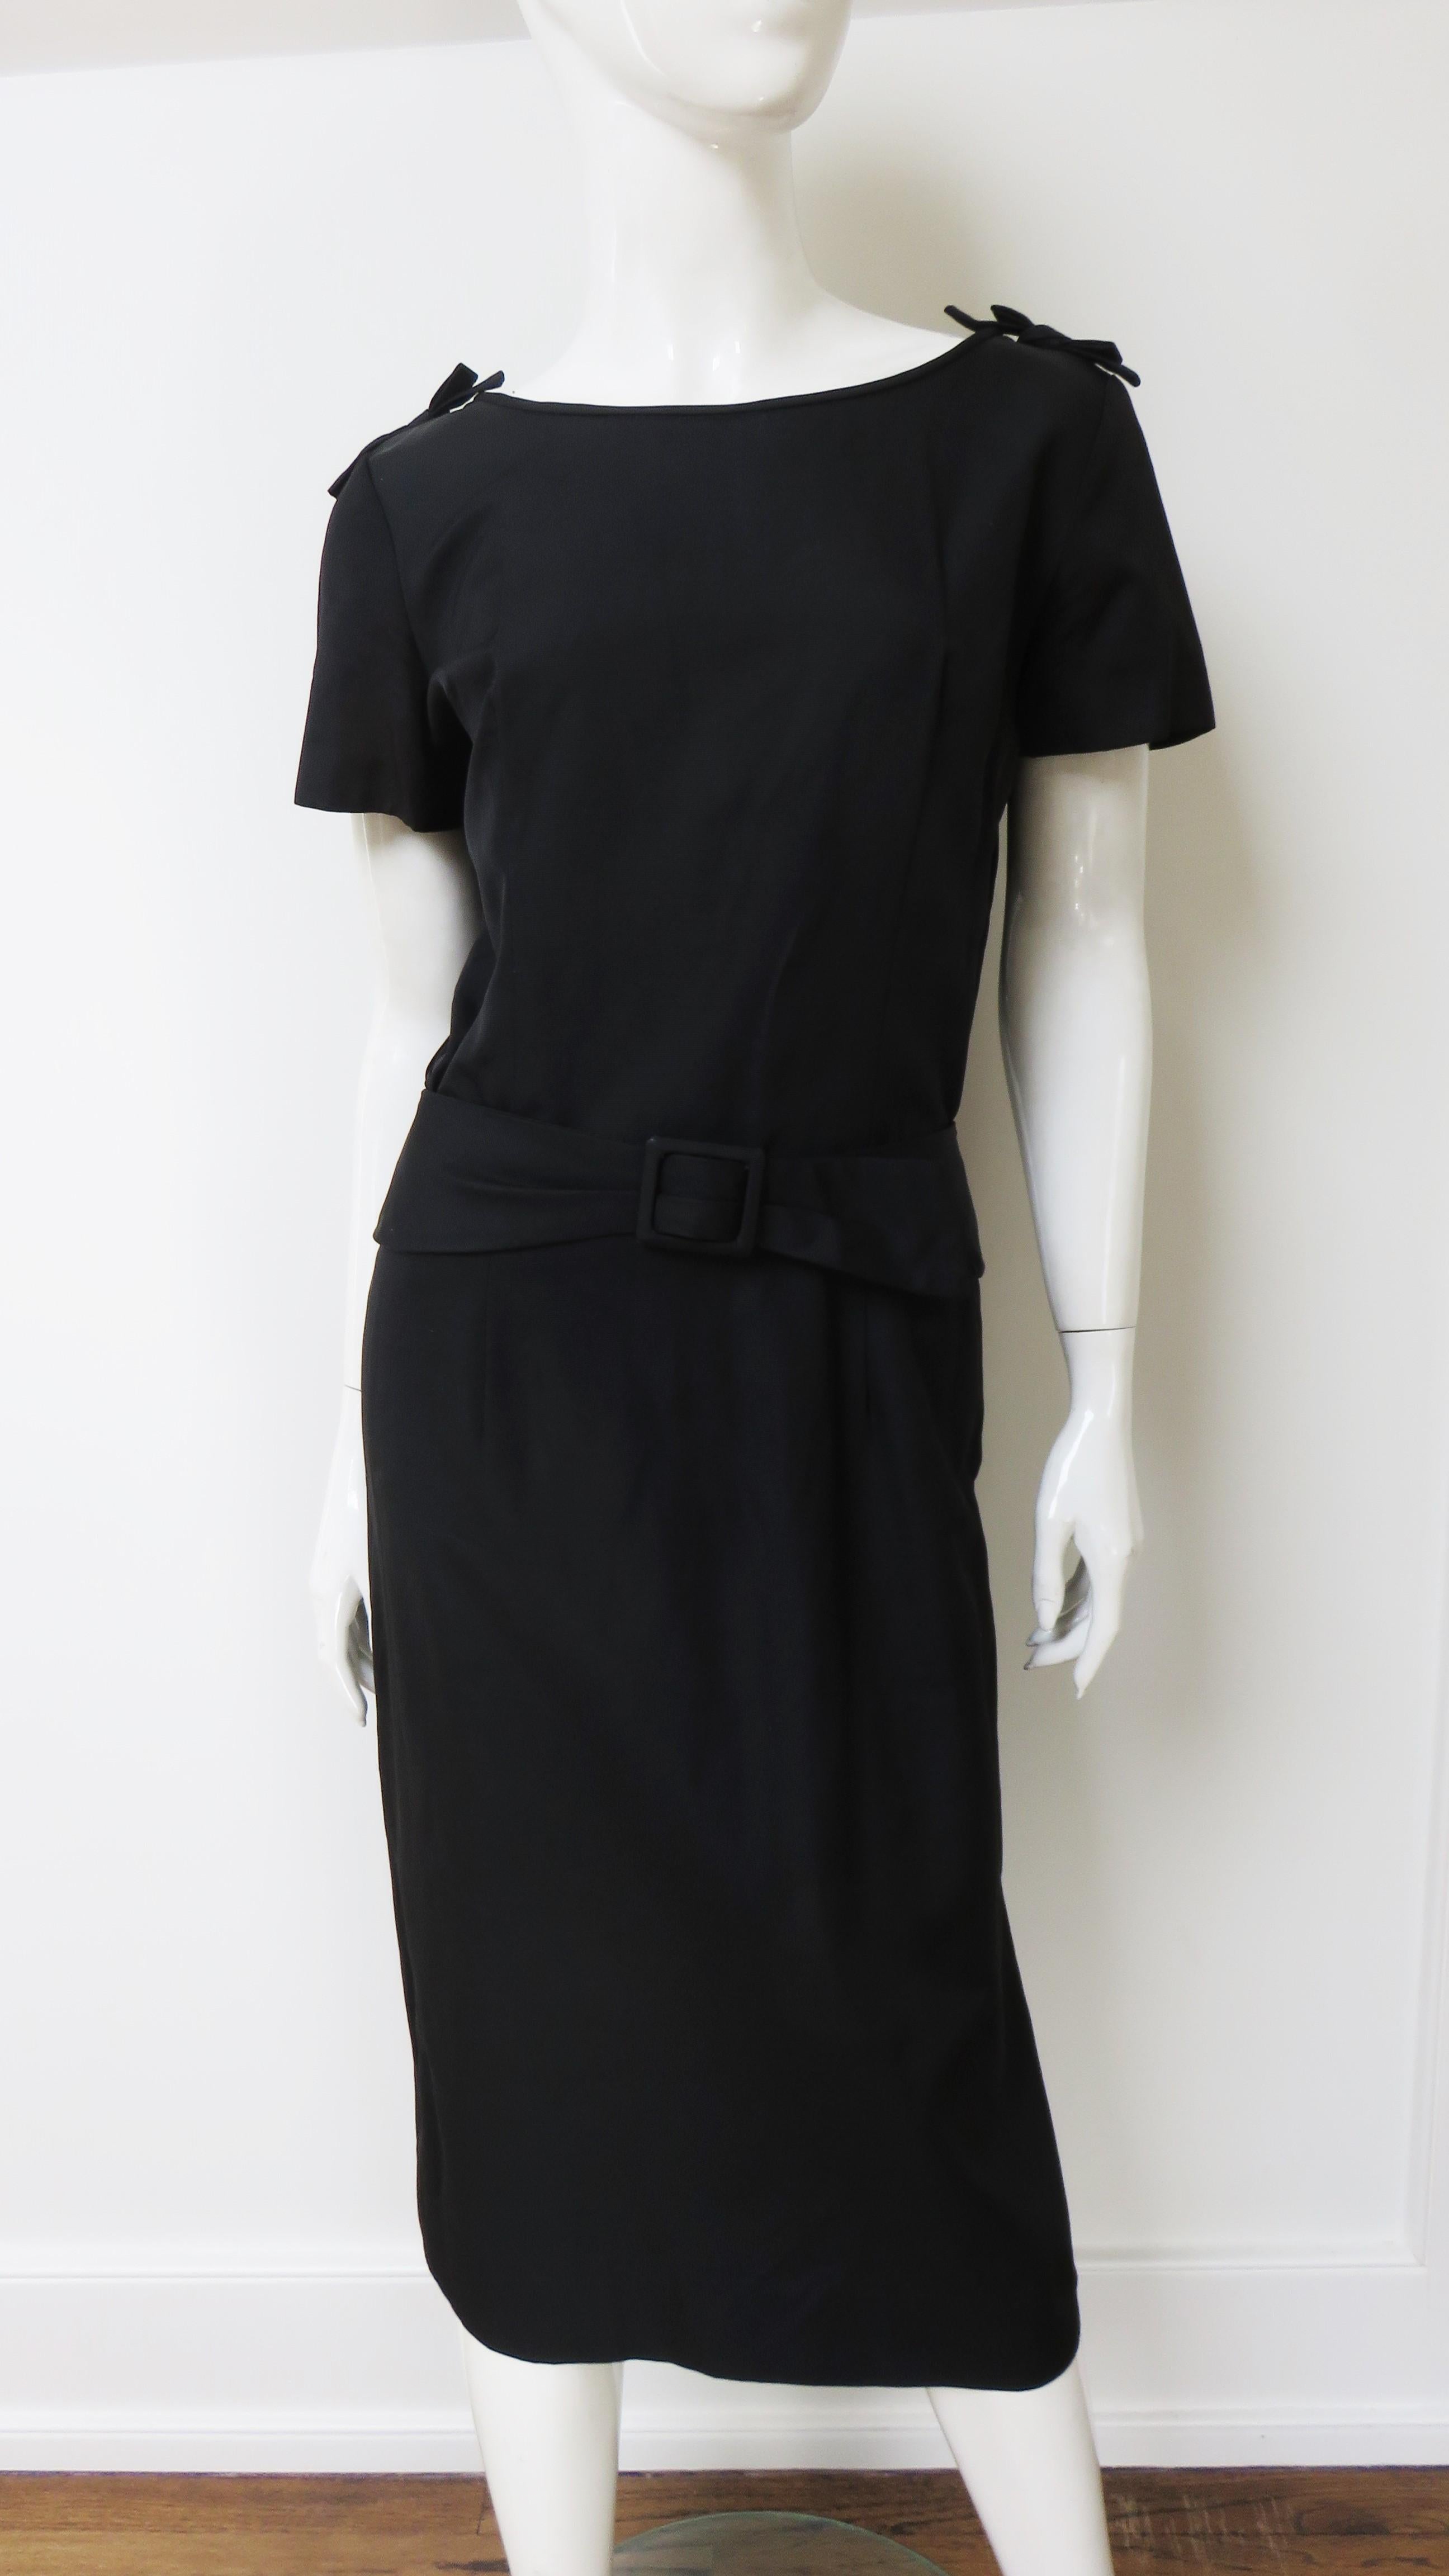 Ein tolles schwarzes Kleid mit Bateau-Ausschnitt, kurzen Ärmeln und kleinen vertikalen Trägern, die im Miederrücken drapiert sind. Es hat einen geraden Rock mit einem Rückenschlitz und einem angebrachten Gürtel. Das Kleid ist ungefüttert und hat